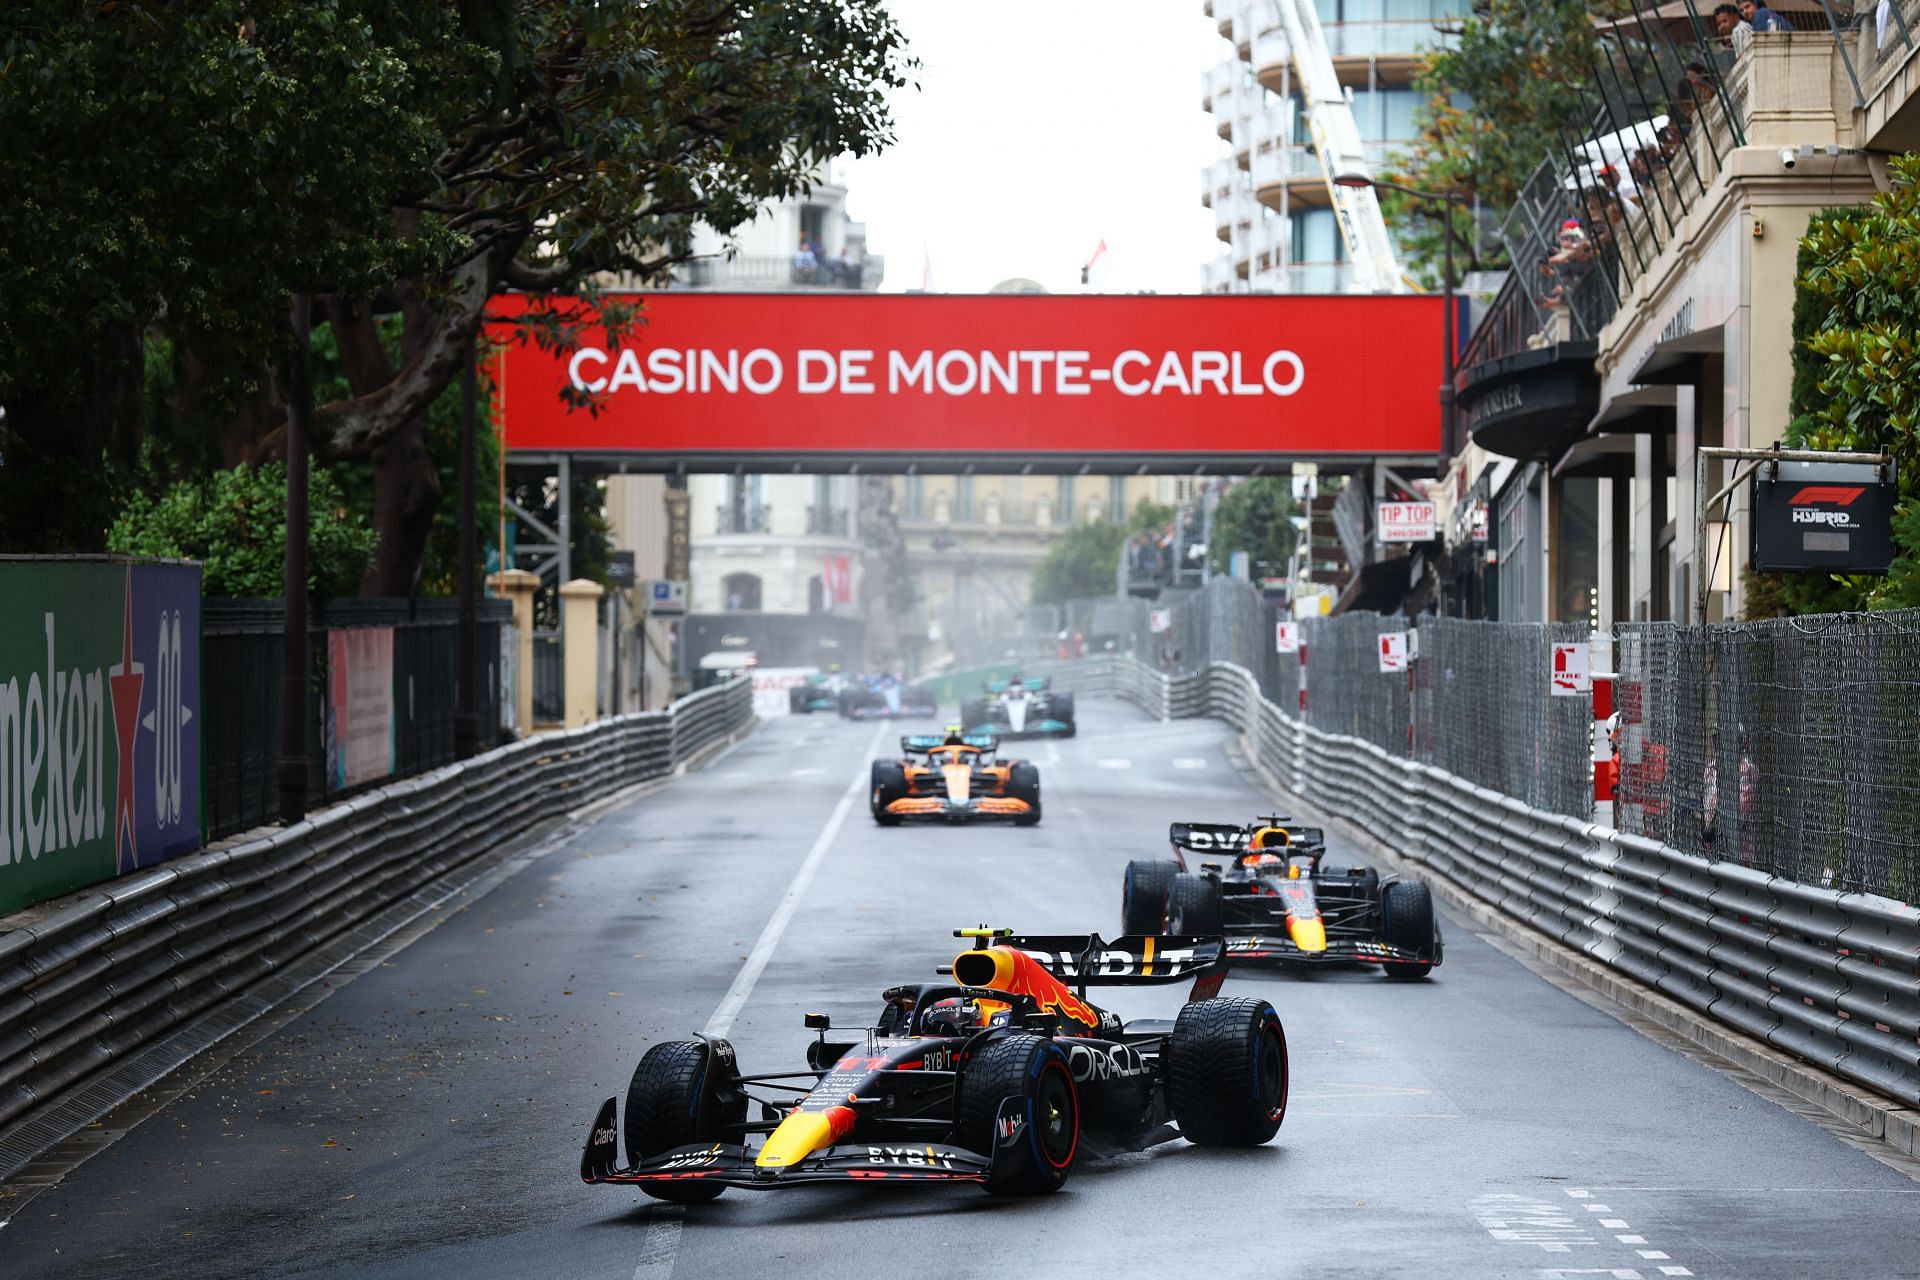 F1 Grand Prix of Monaco - Red Bull